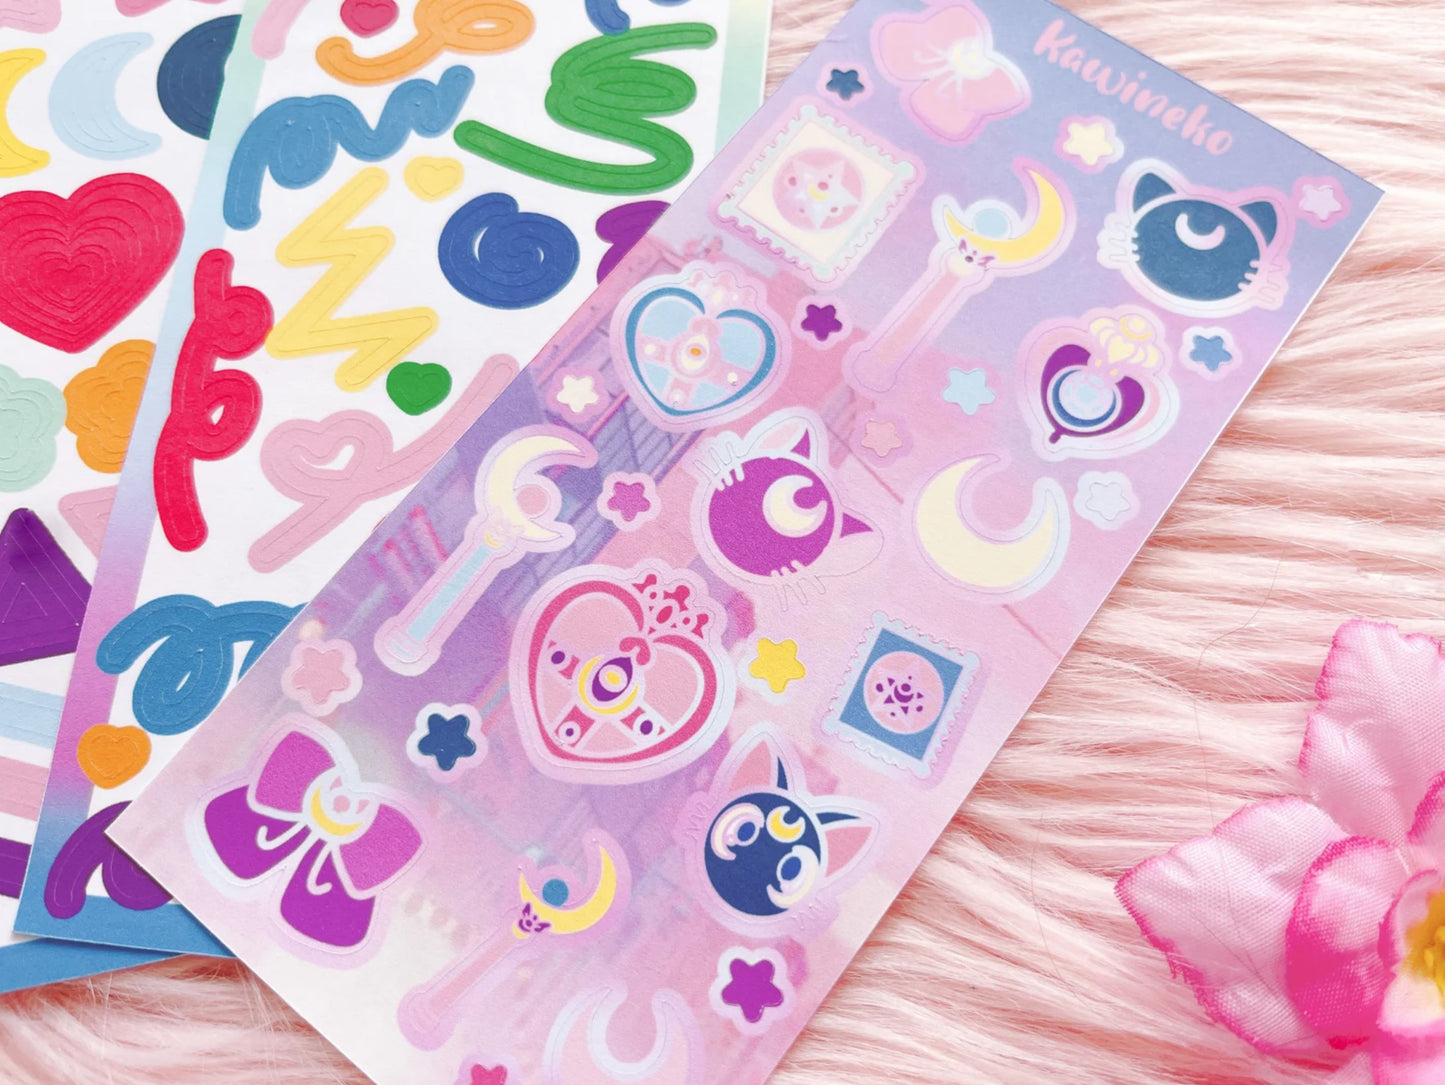 Sailor Moon color palette deco bundle anime manga sticker